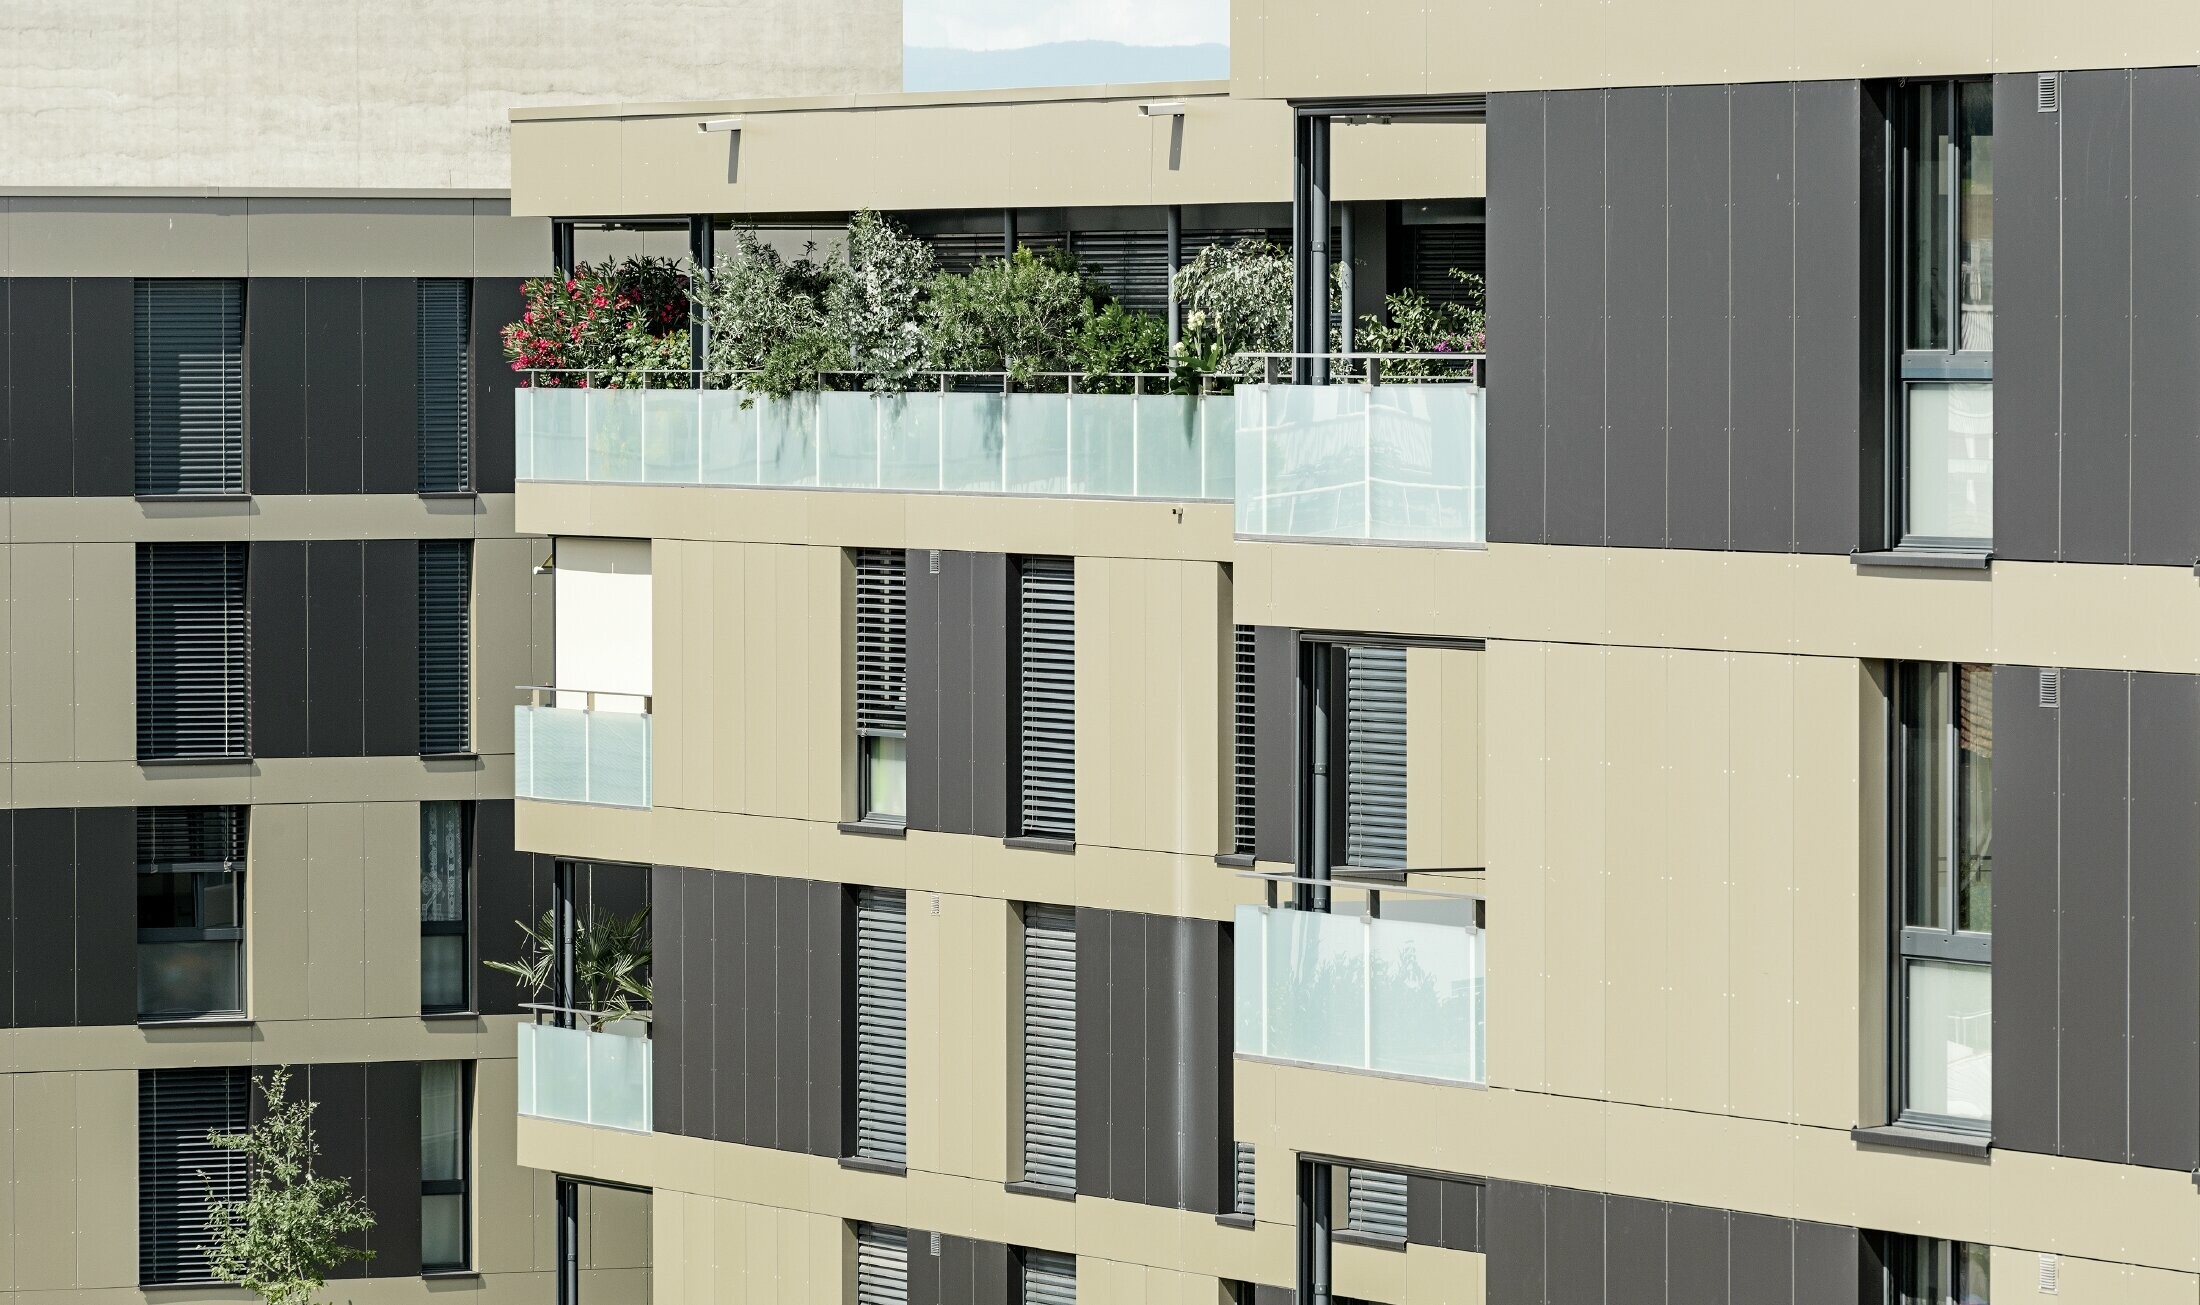 Würfelige Wohnhausanlage mit einer Aluminiumfassade in Bronze mit schwarzgrauen Elementen